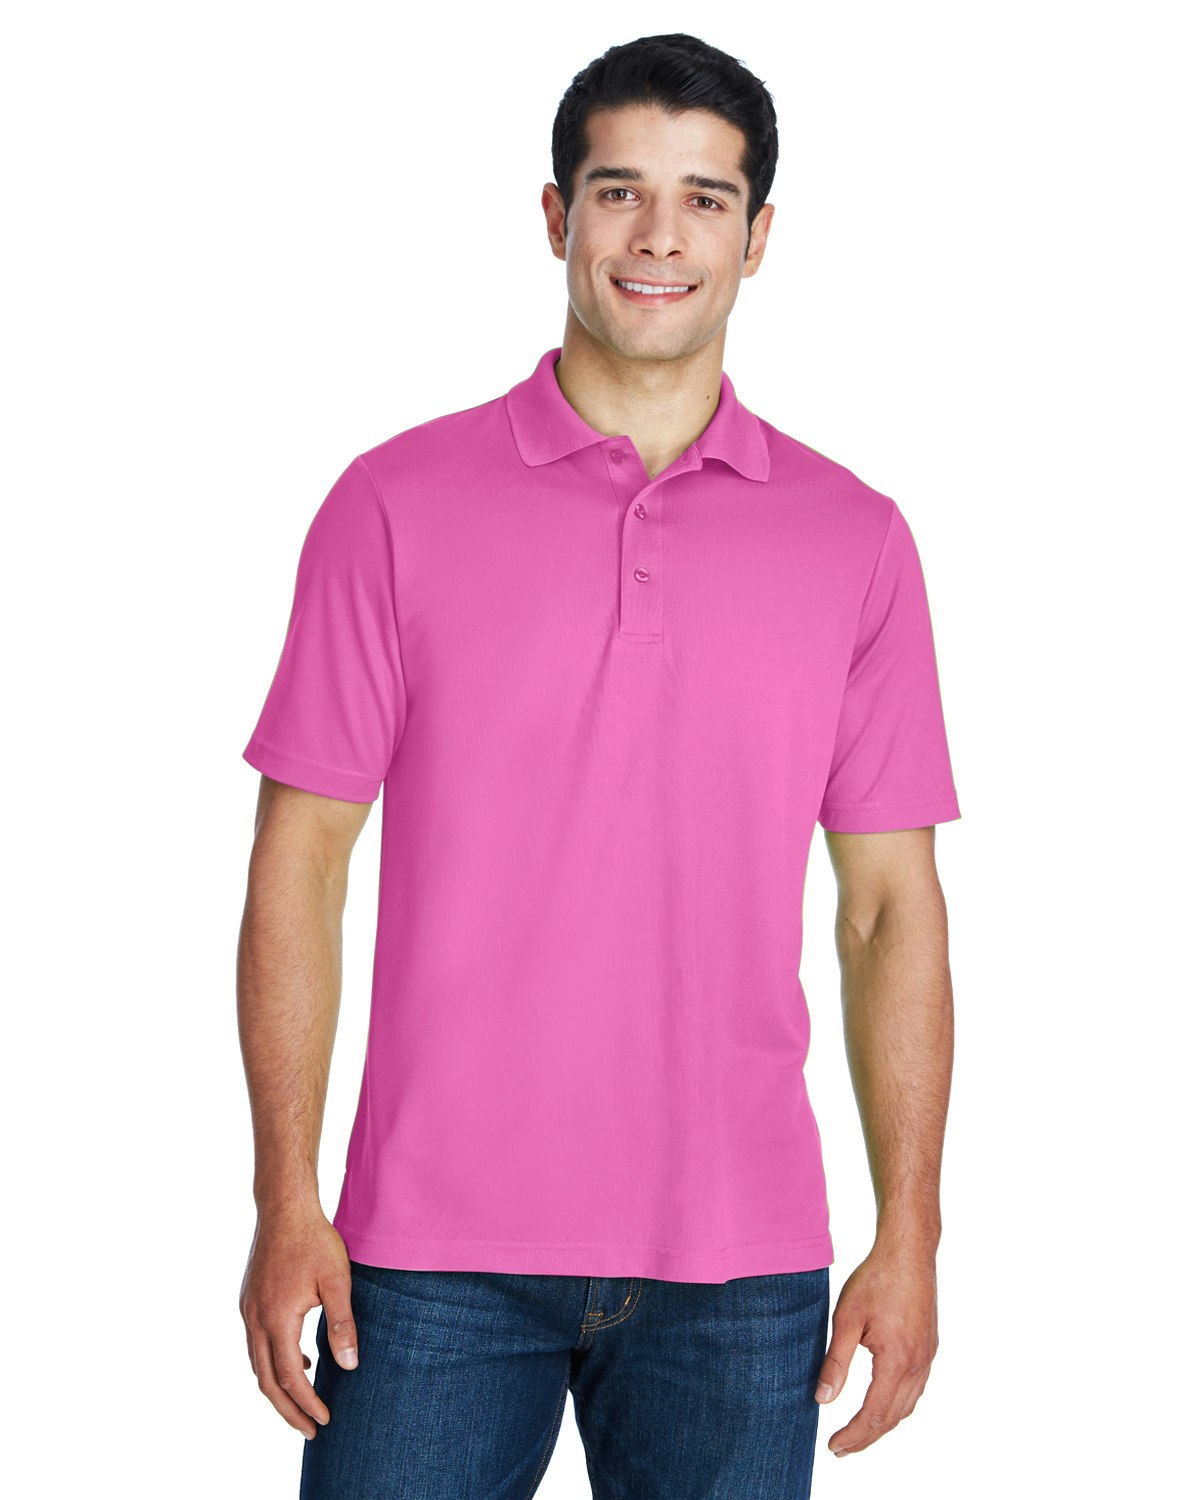 pink polo shirt